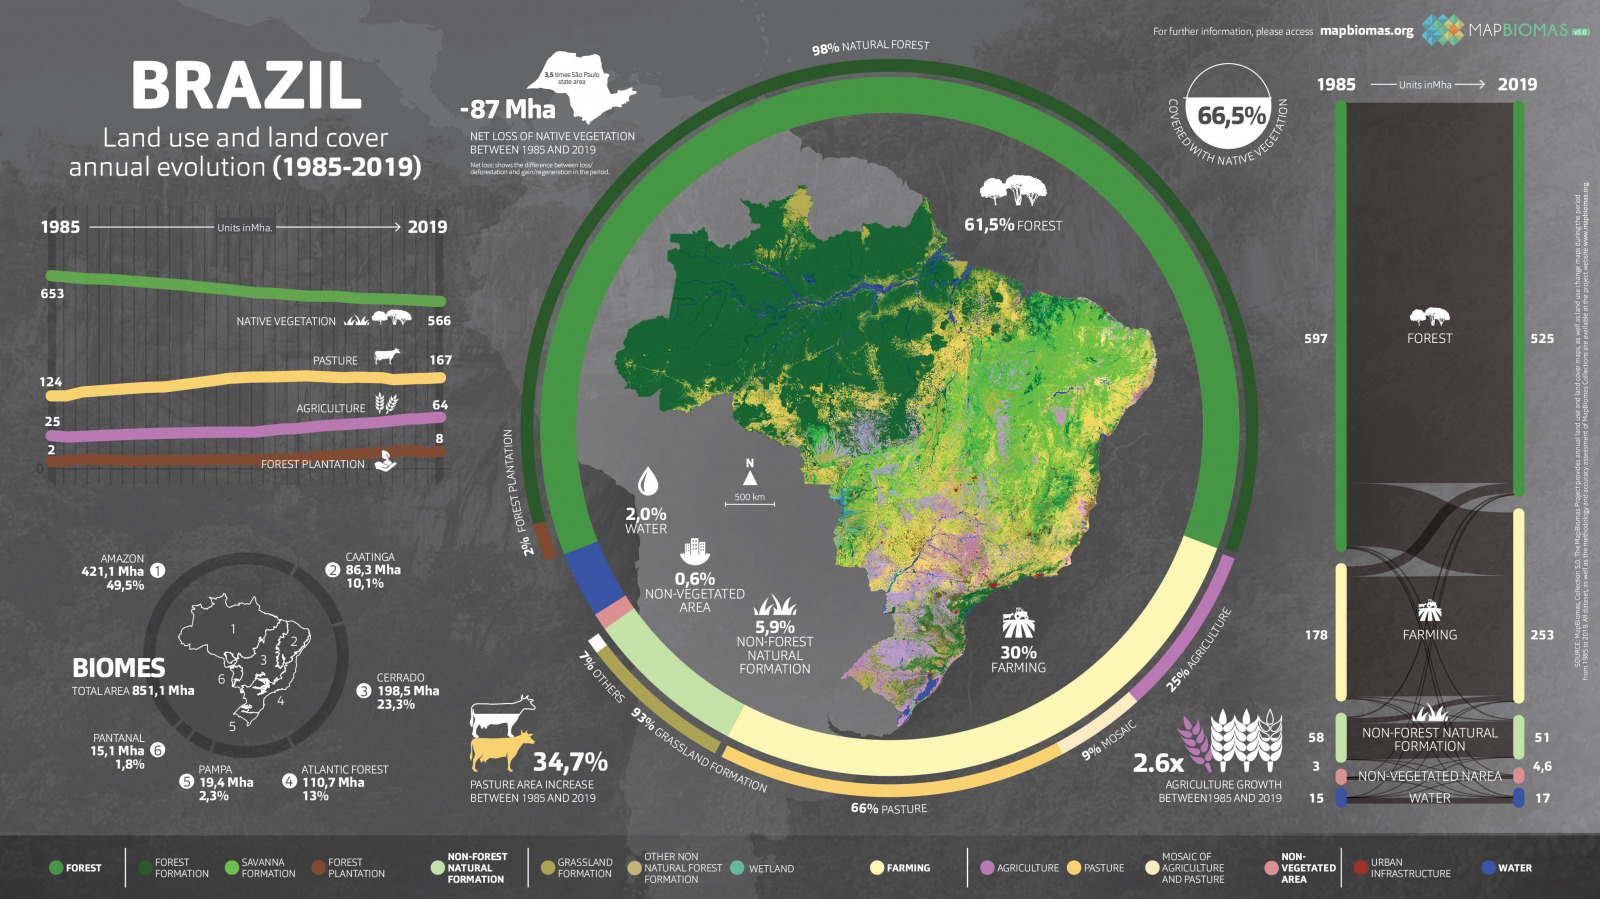 MBI Infografico brazil 5.0 EN CC BY SA 4.0